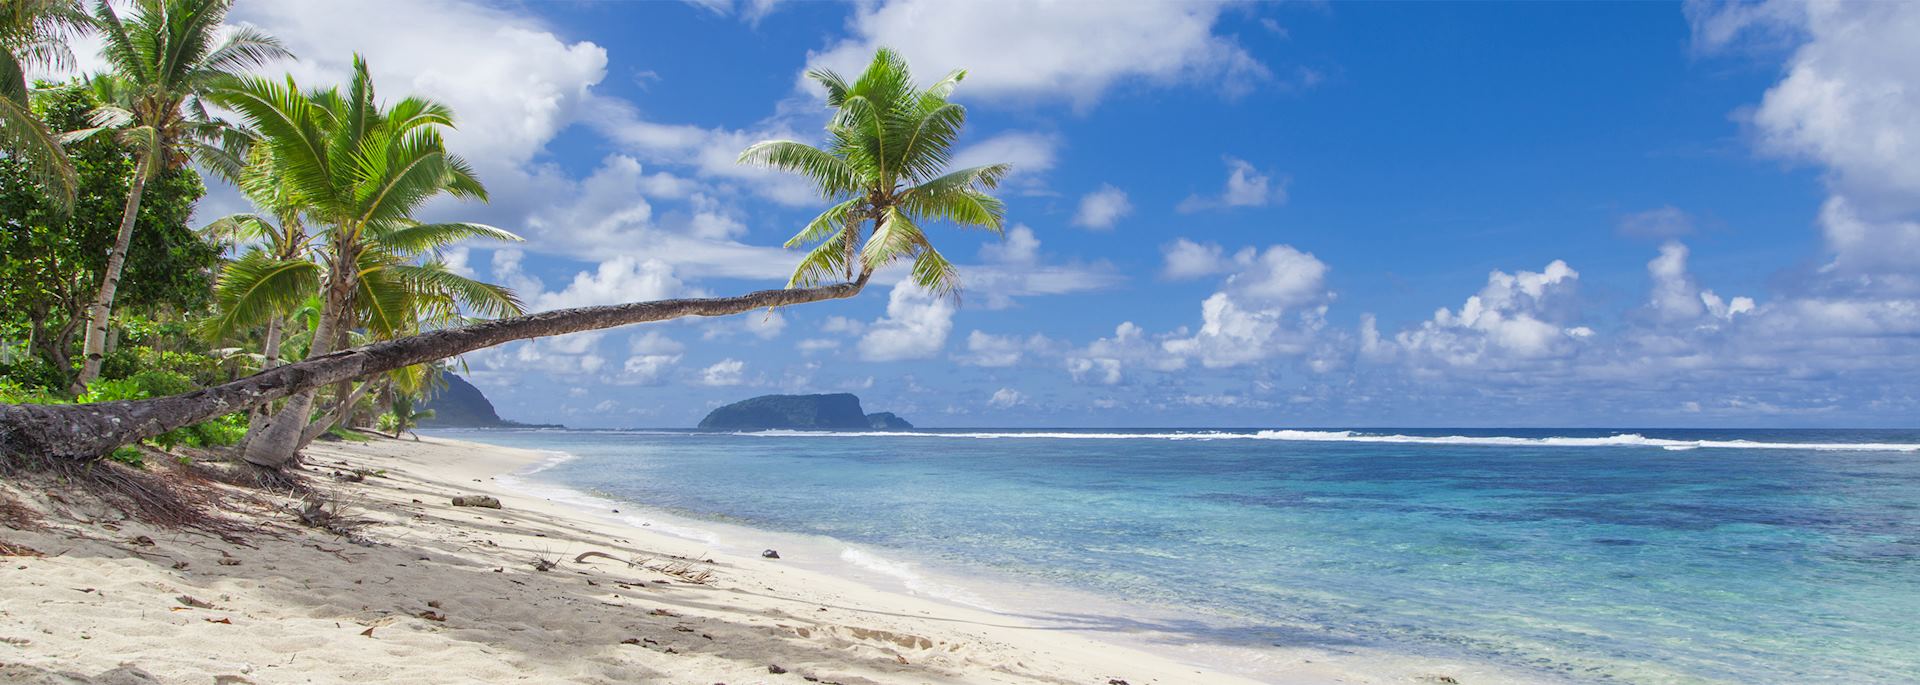 Samoa beach